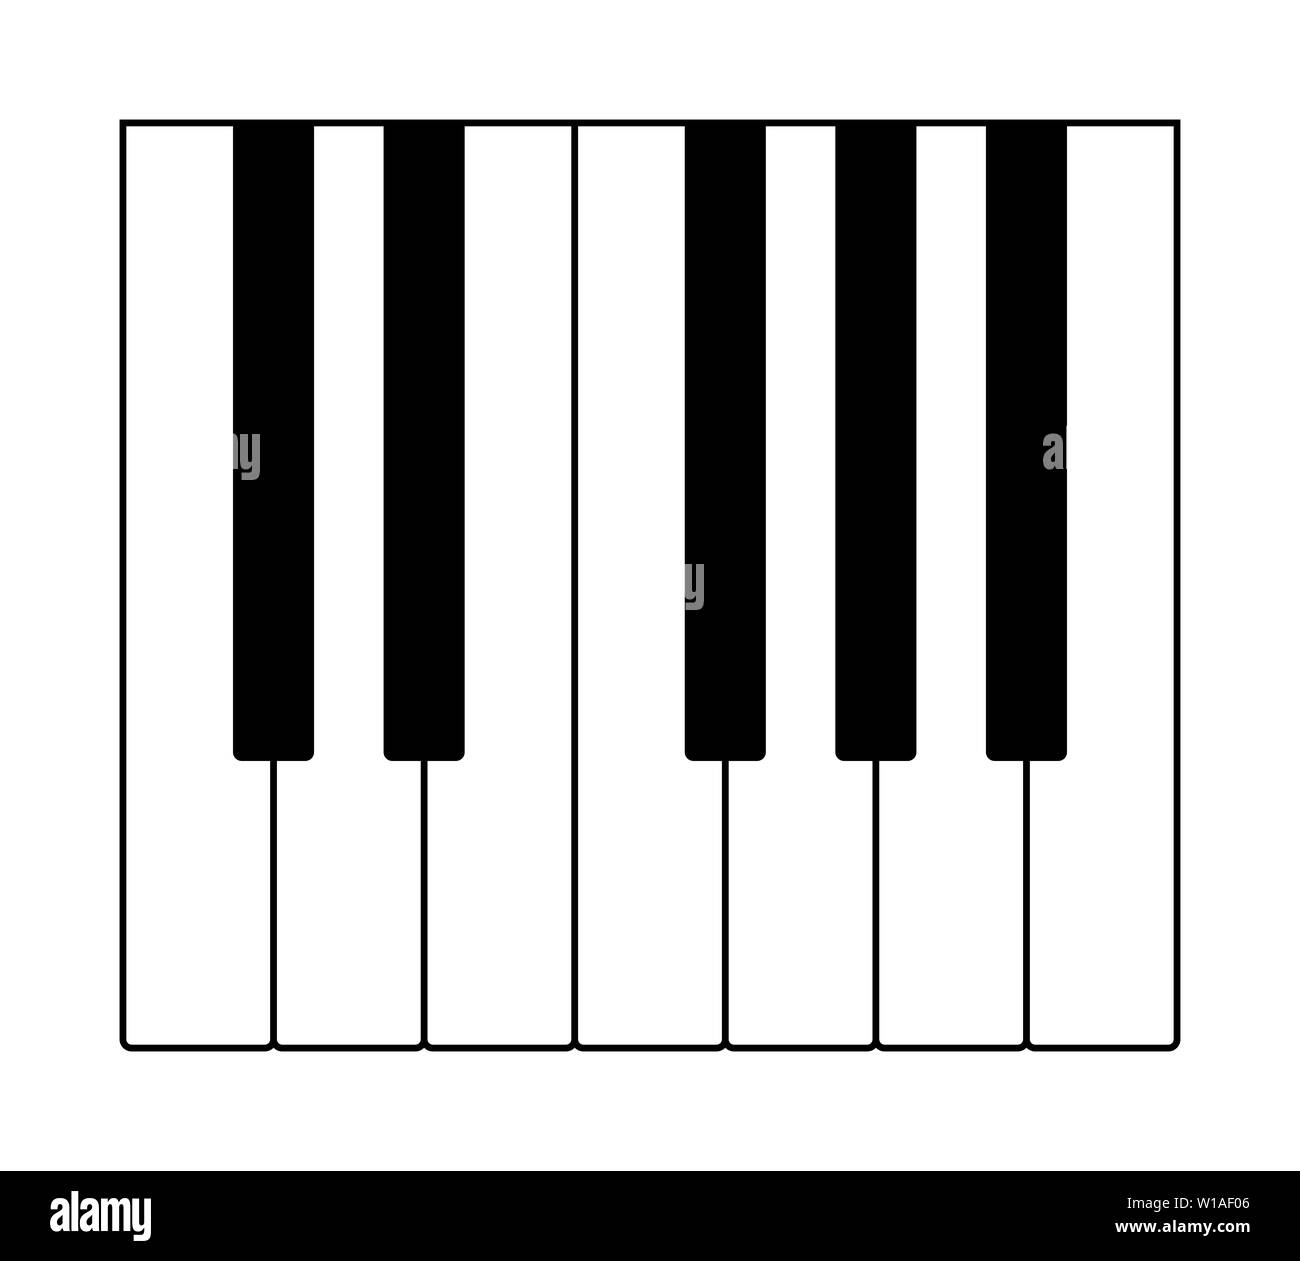 Una octava en el teclado para tocar notas de la escala musical occidental. Las doce teclas de un instrumento. Foto de stock